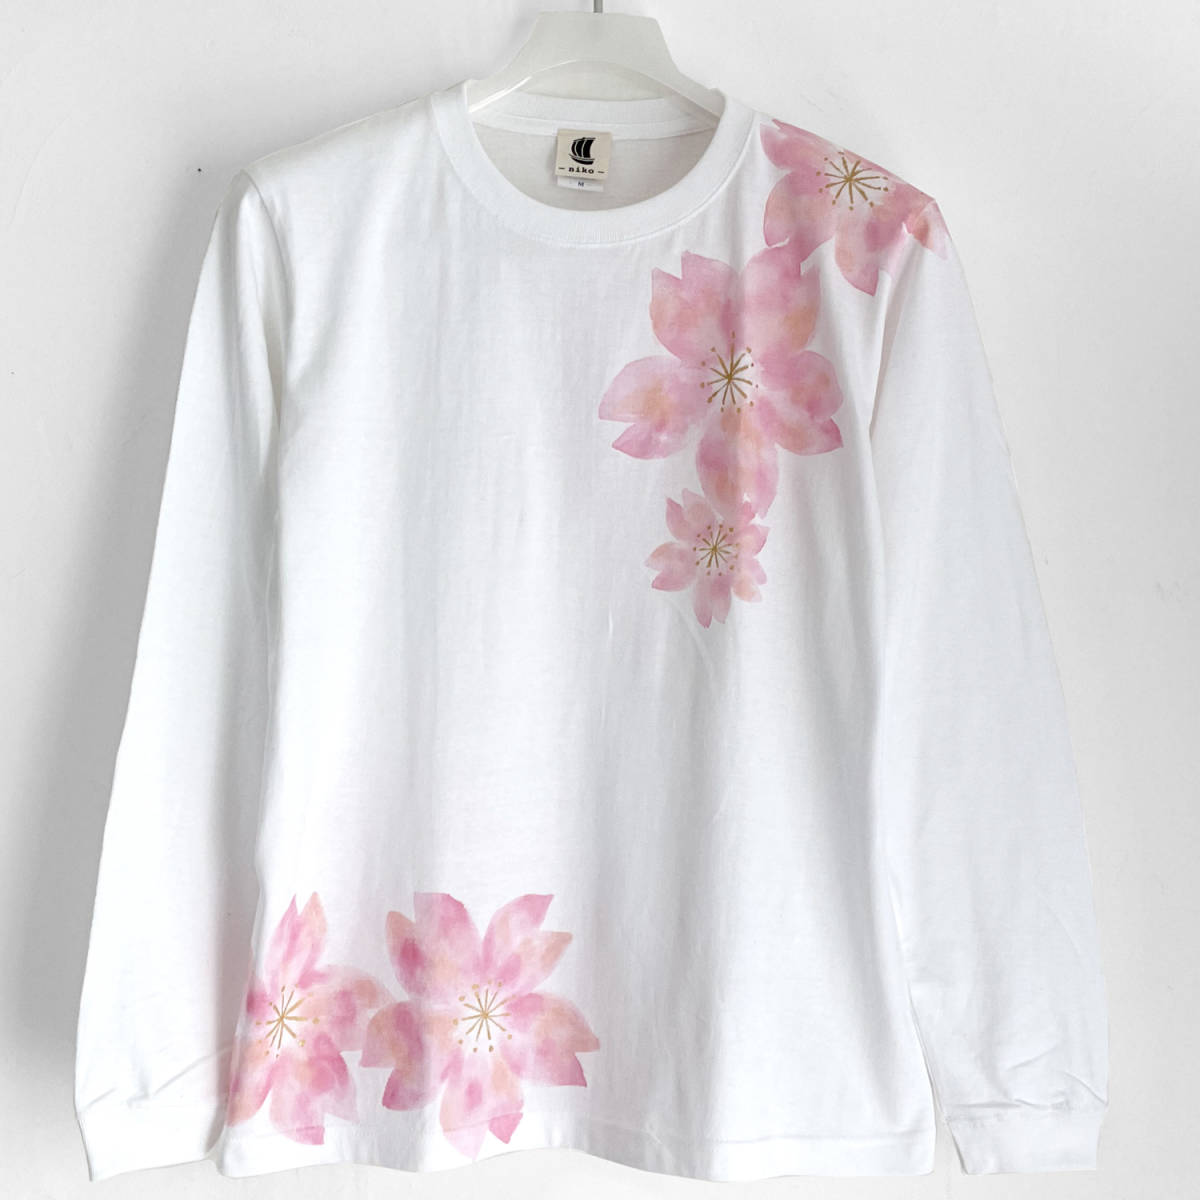 춤추는 벚꽃 무늬 티셔츠 화이트 S 사이즈 손그림 긴팔 골지소매 티셔츠 롱 T 꽃무늬 화 무늬 핑크, 티셔츠, 긴팔, 작은 크기